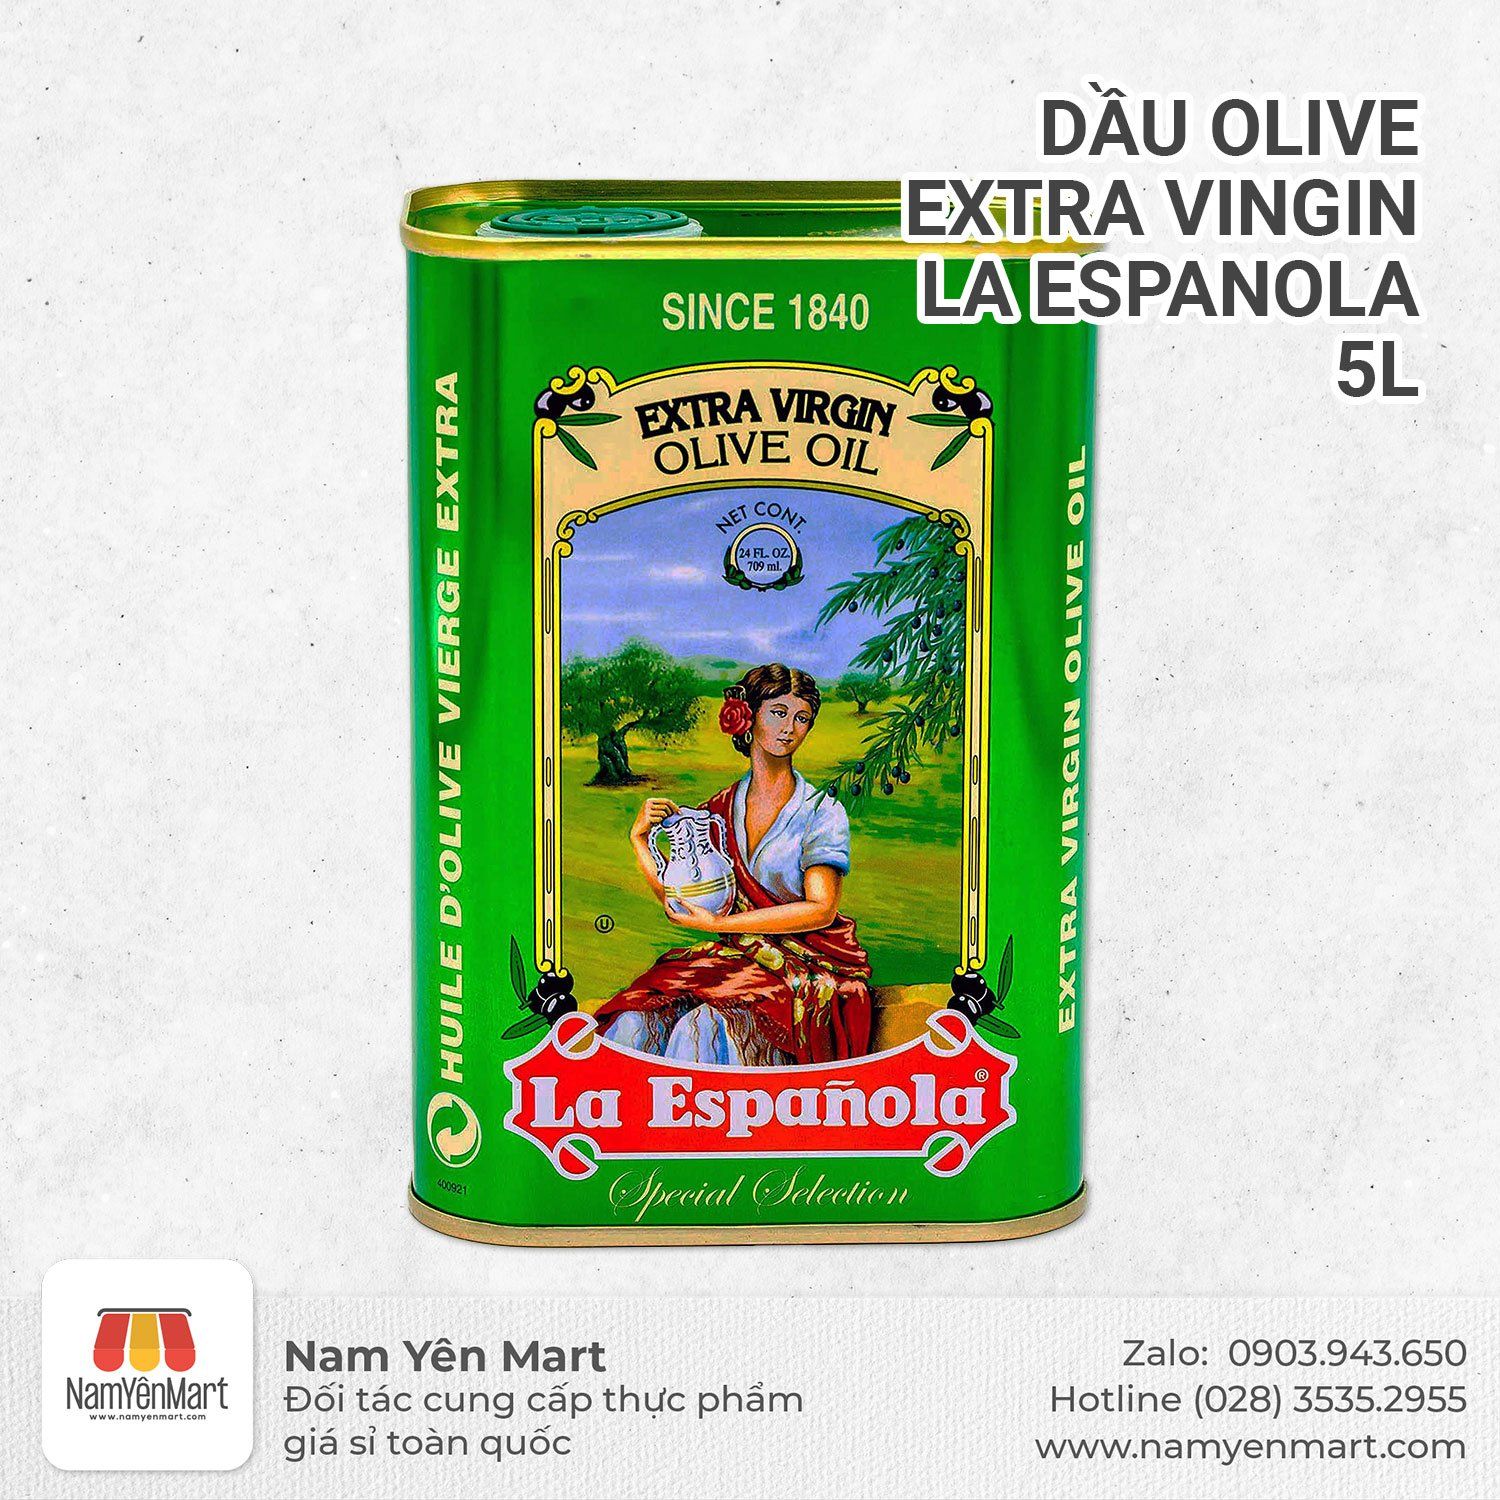  Dầu olive Extra Vingin La Espanola 5L 